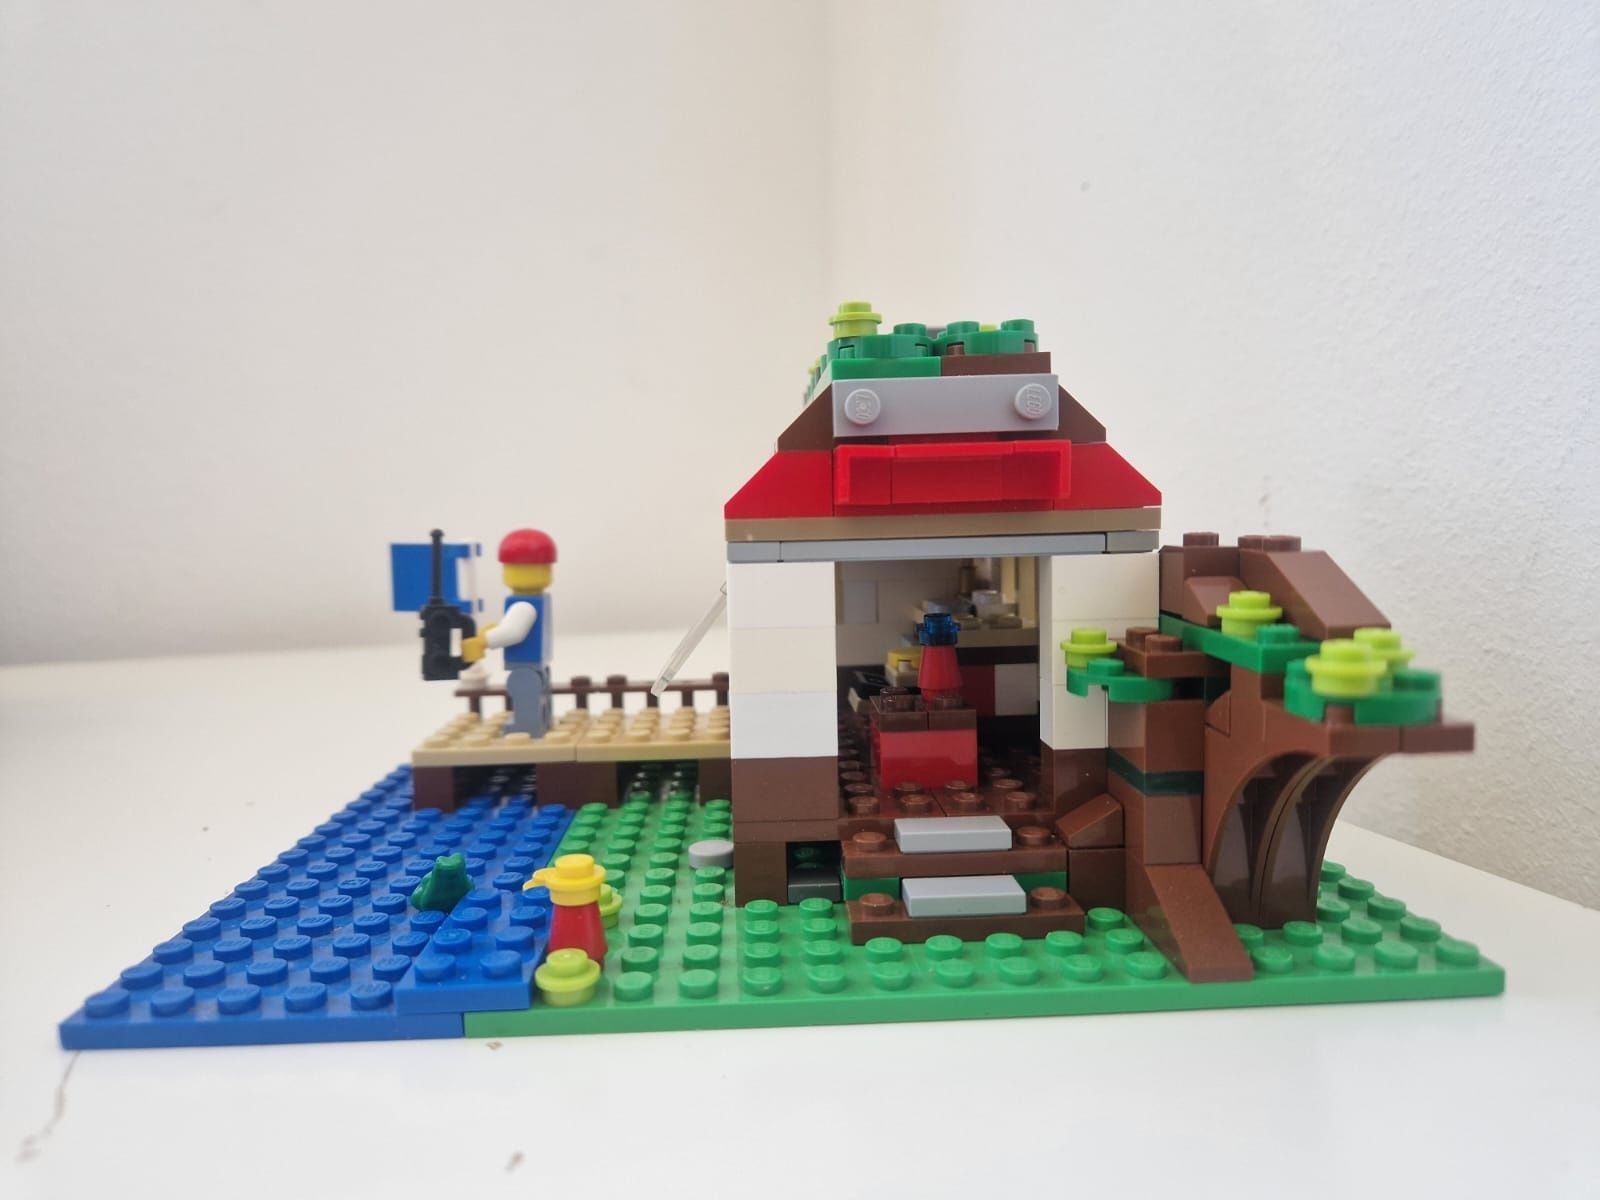 Lego Creator 31010 domek na drzewie 3w1